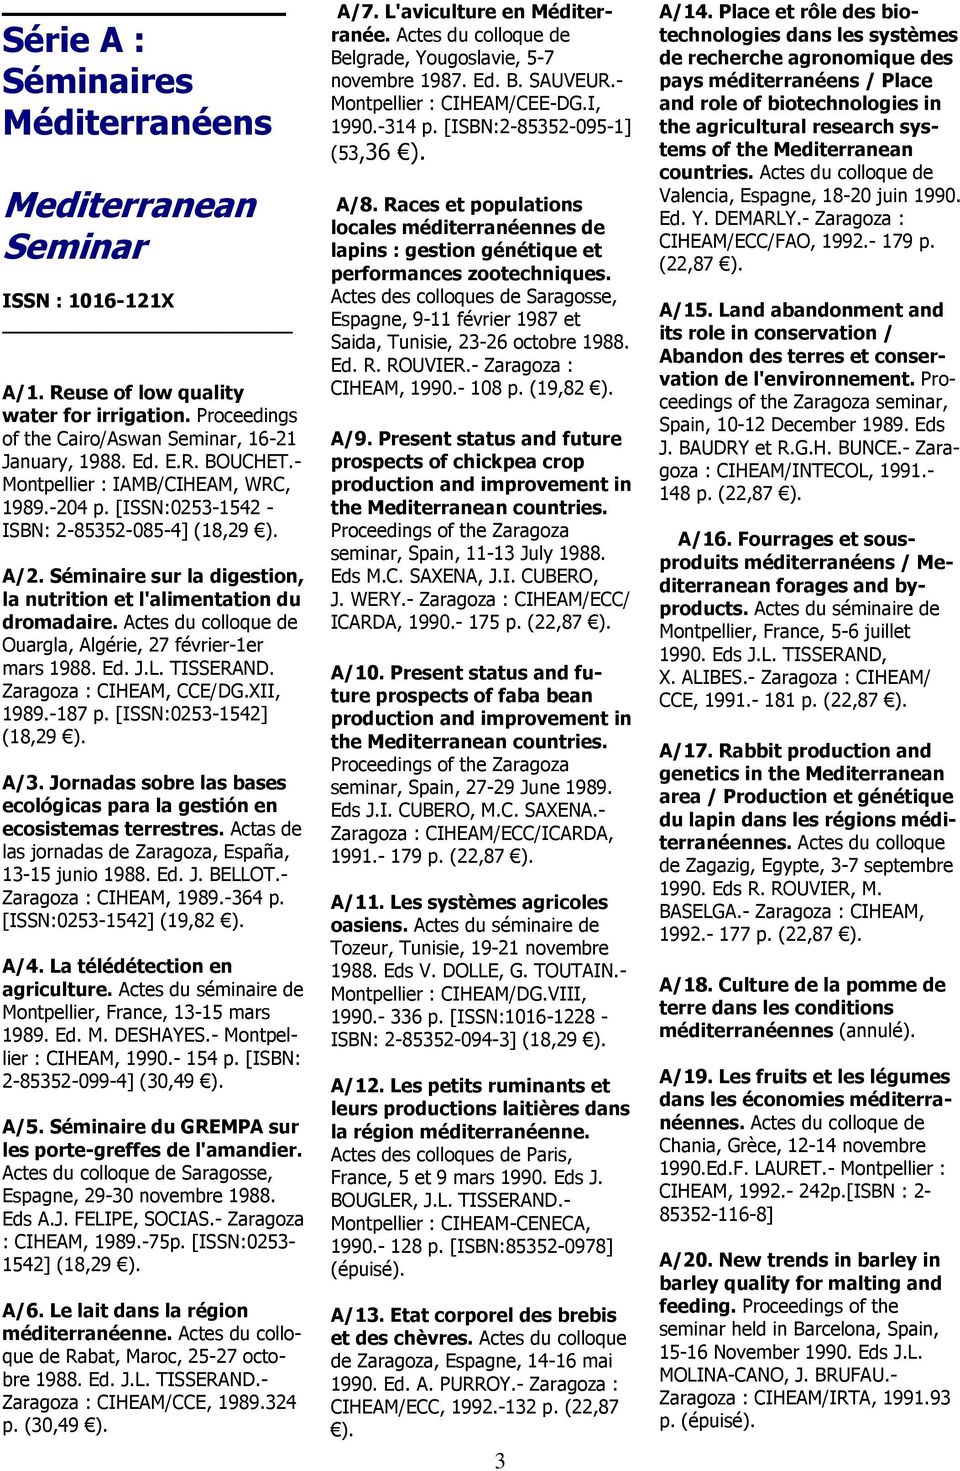 Actes du colloque de Ouargla, Algérie, 27 février-1er mars 1988. Ed. J.L. TISSERAND. Zaragoza : CIHEAM, CCE/DG.XII, 1989.-187 p. [ISSN:0253-1542] (18,29 ). A/3.